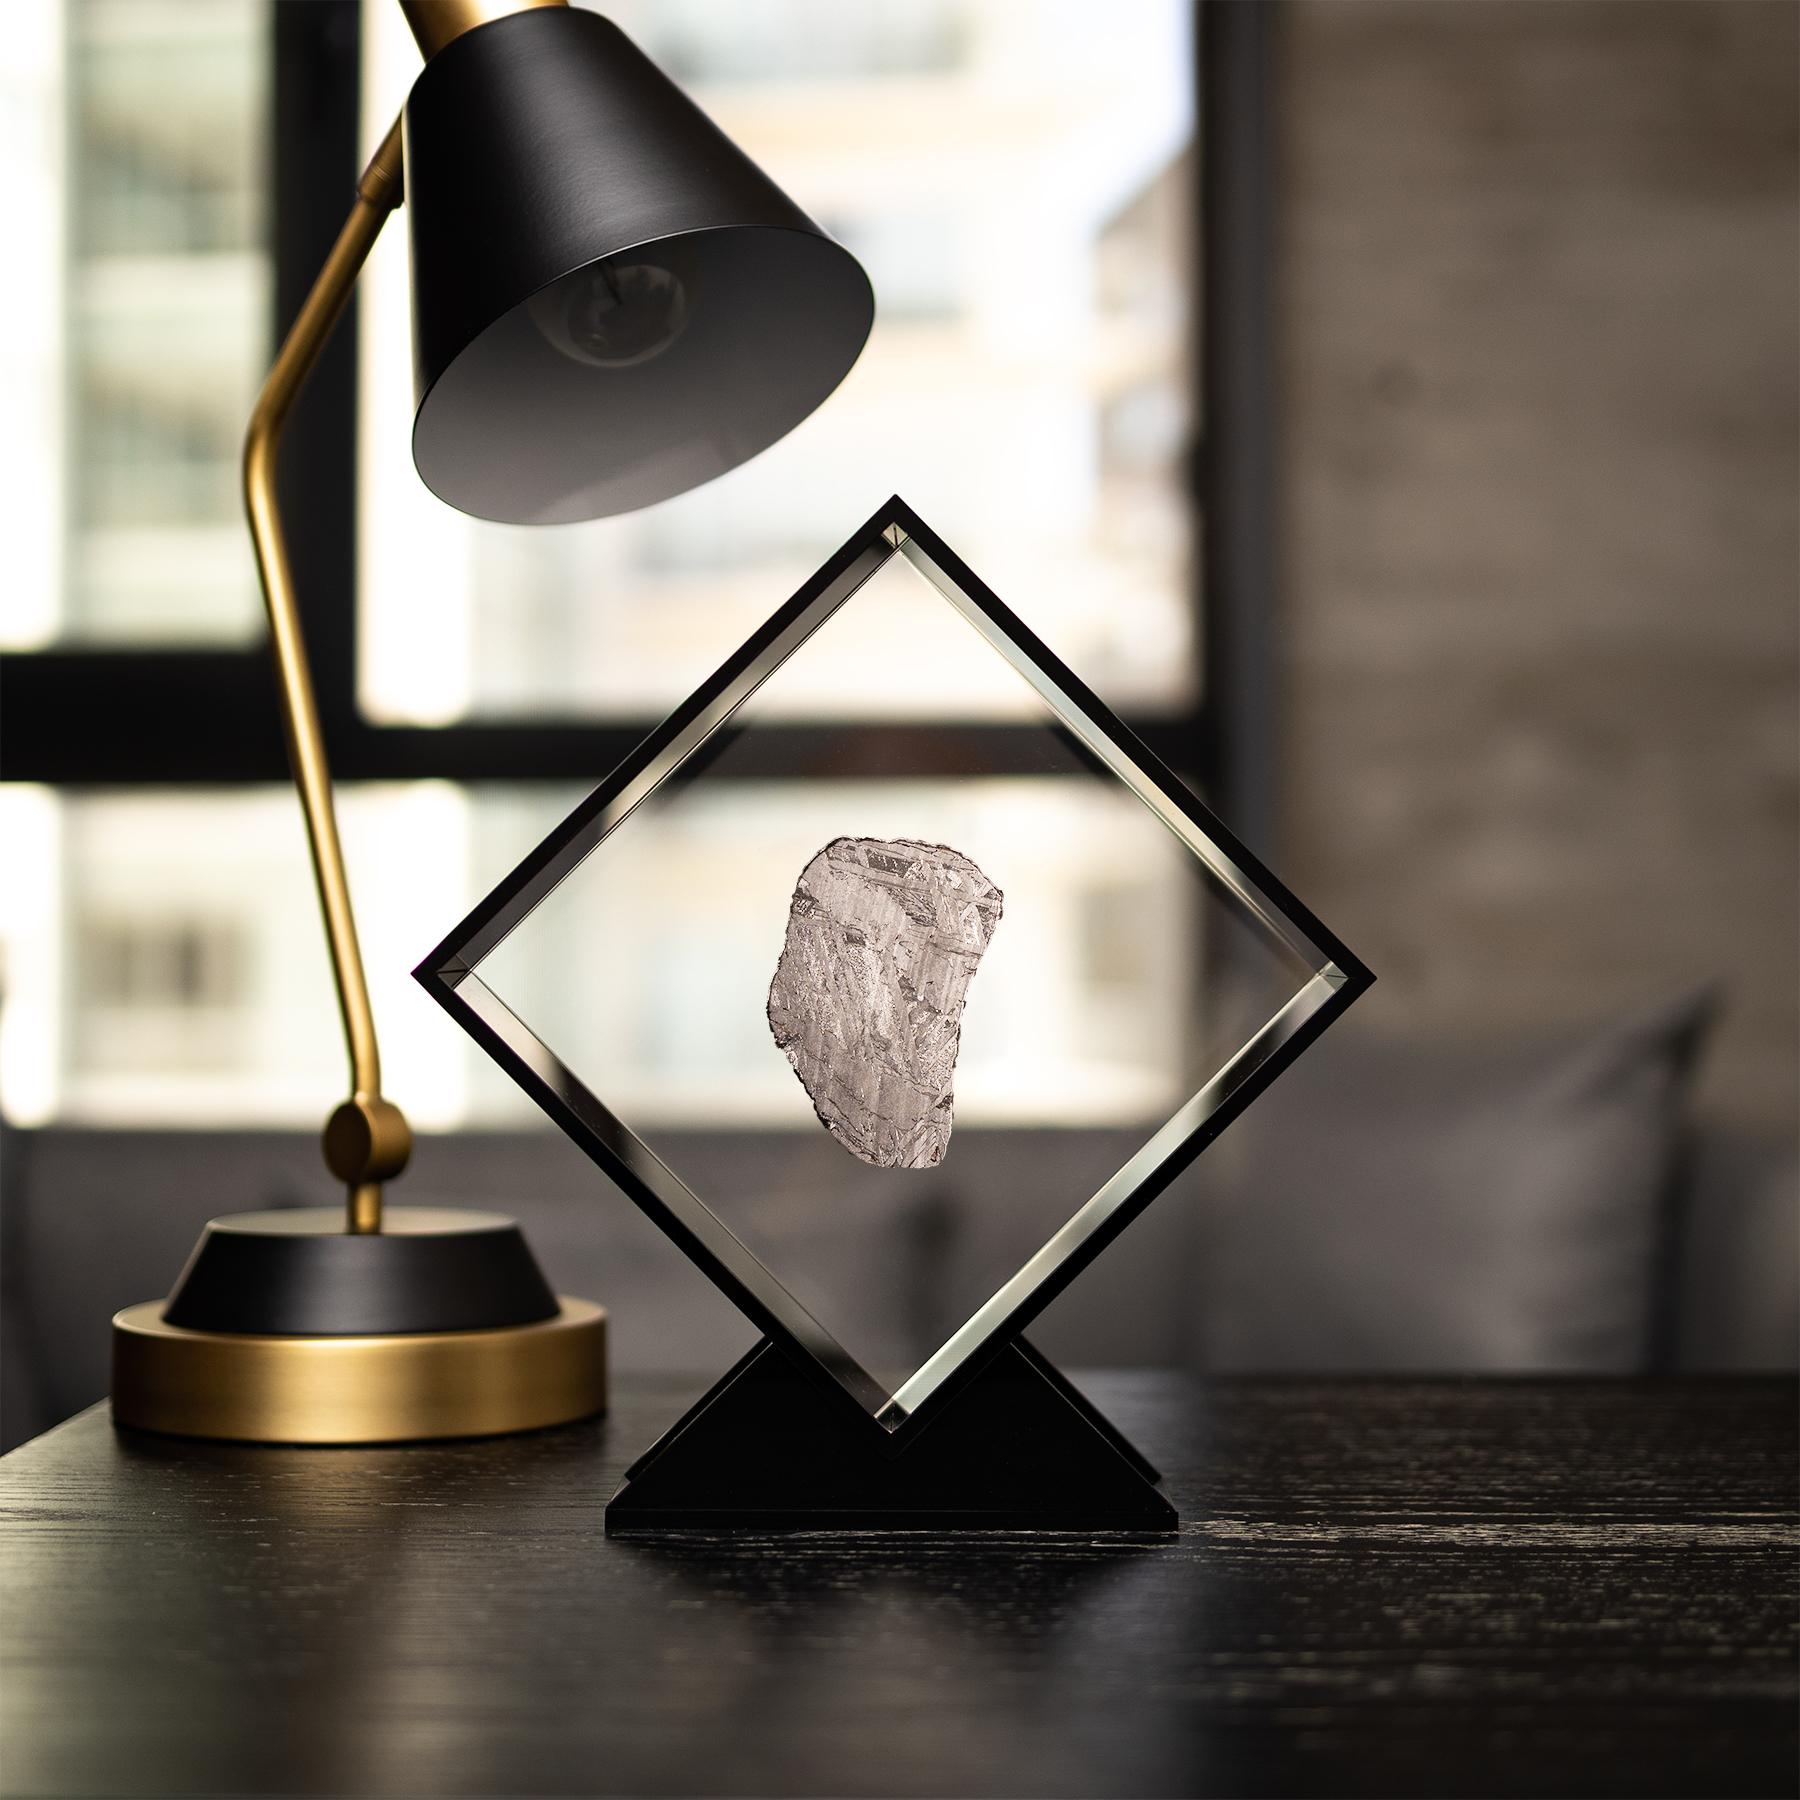 Design/One original dans un présentoir en acrylique avec un aimant donnant l'impression que la météorite flotte comme elle l'a fait dans l'espace pendant des années avant sa dernière visite sur Terre. 
Seymchan avec météorite à olivine 
Origine :